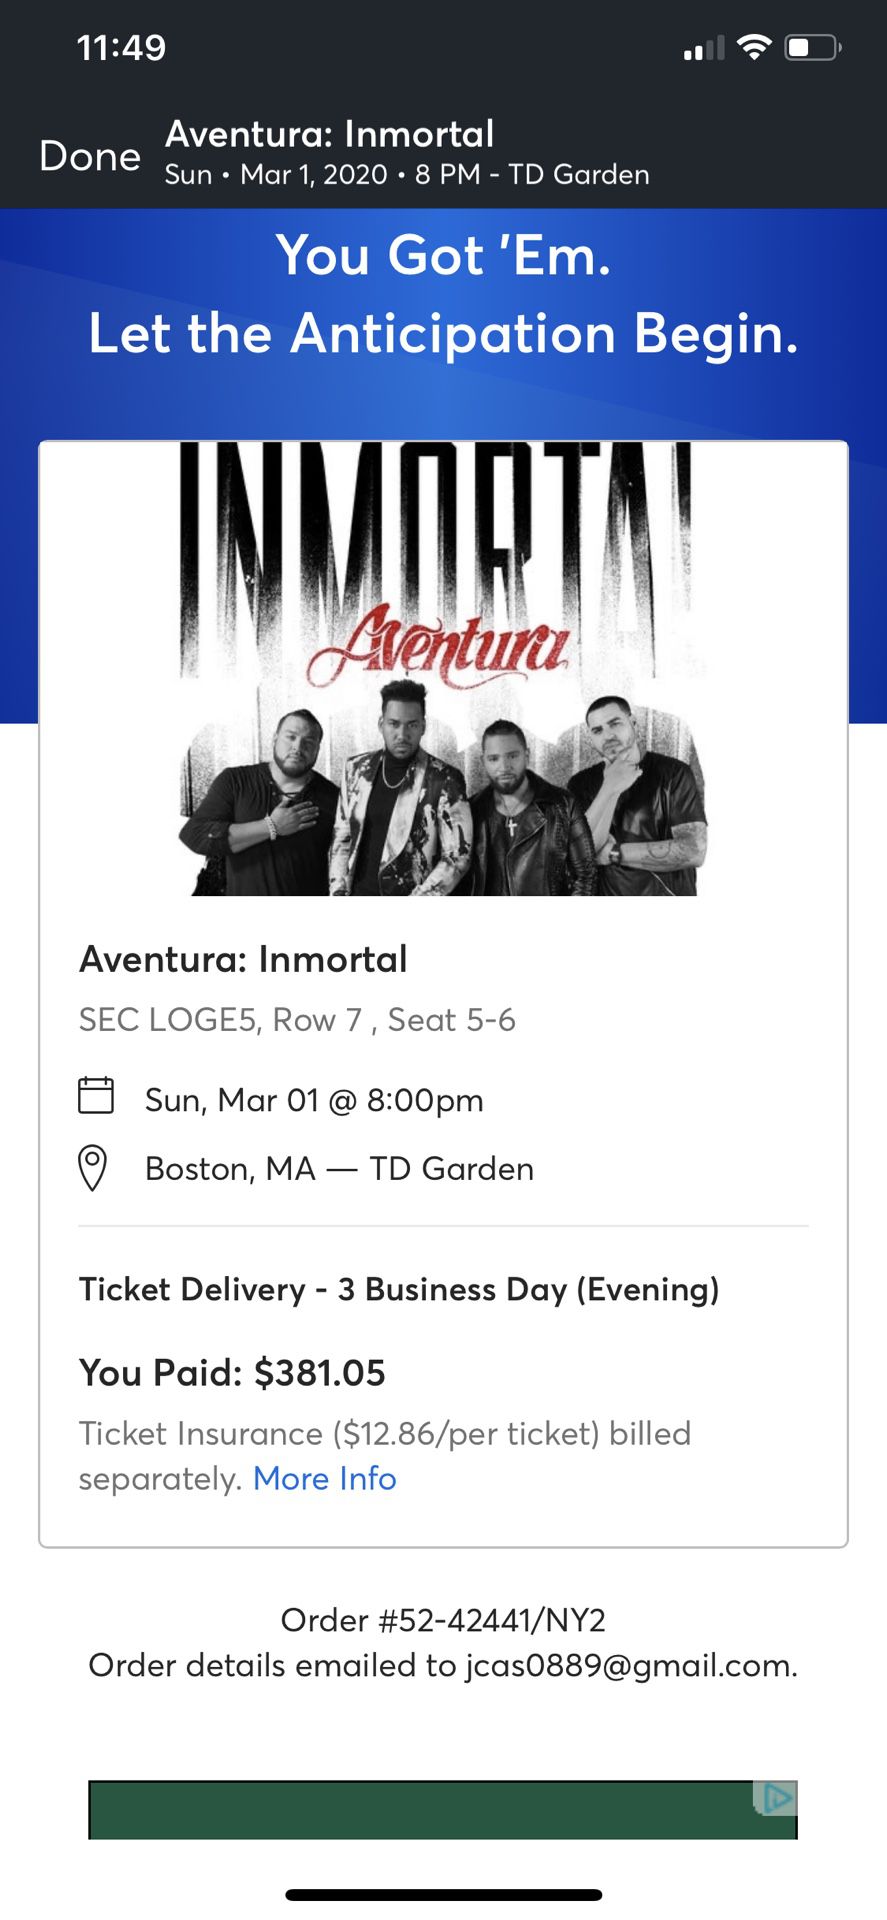 Aventura immortal tickets 03/01 TD Garden